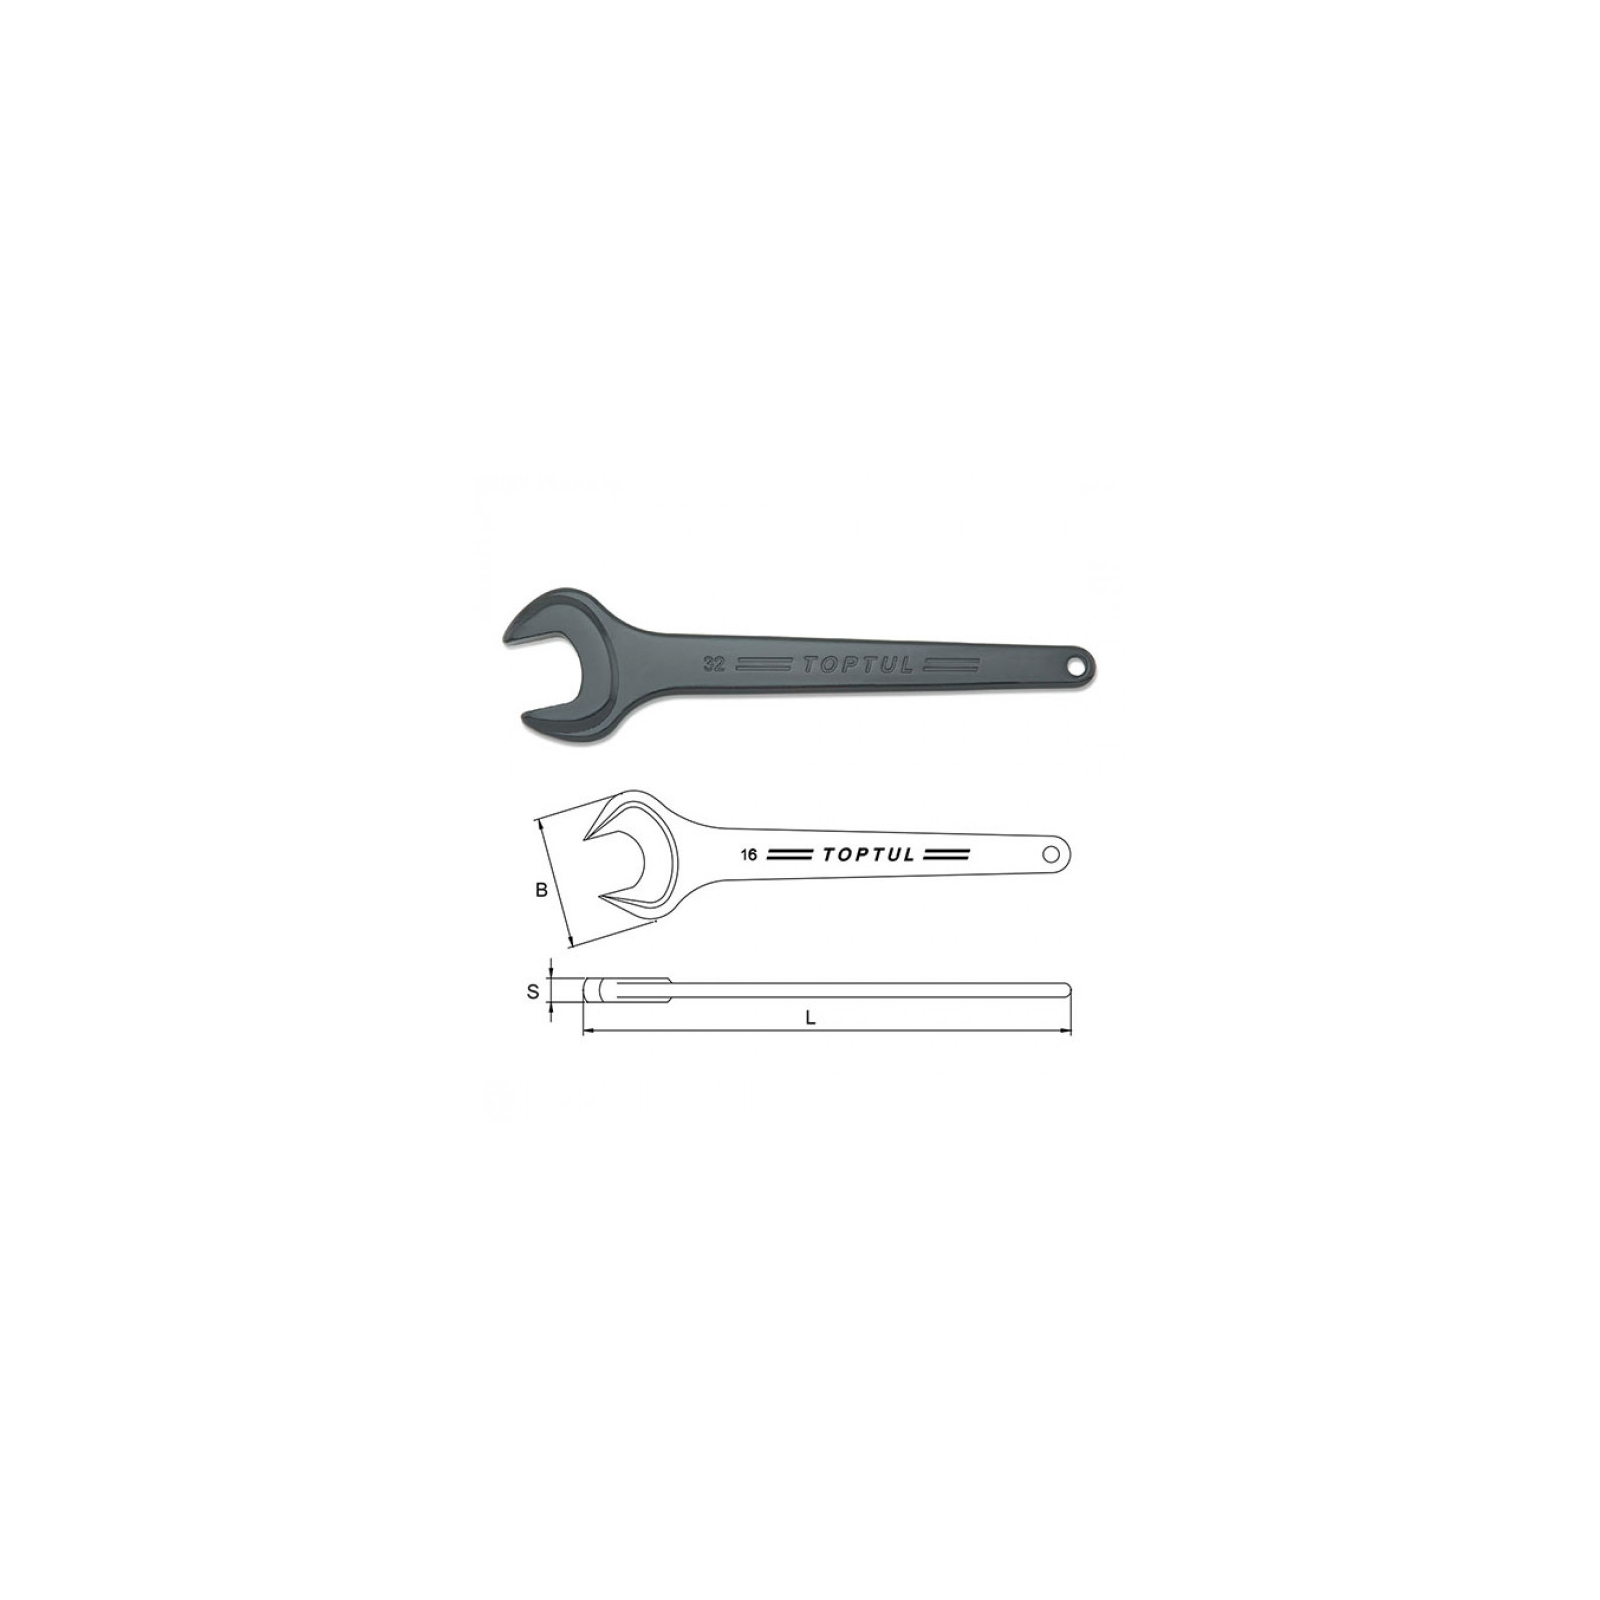 Ключ Toptul рожковый односторонний (усиленный) 34мм (AAAT3434) изображение 2